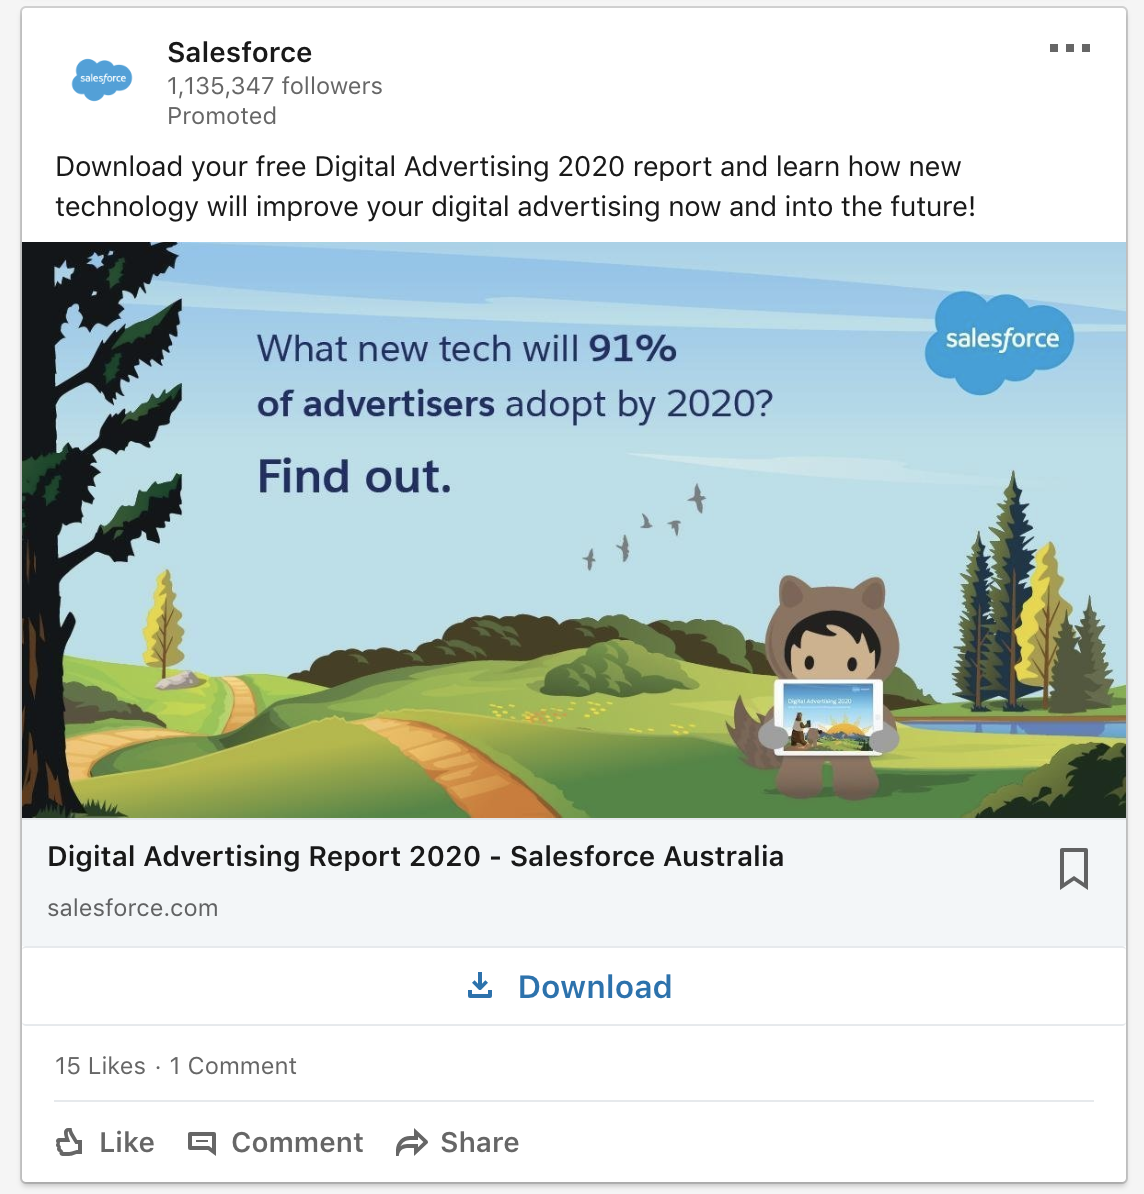 Sales force - digital advertising